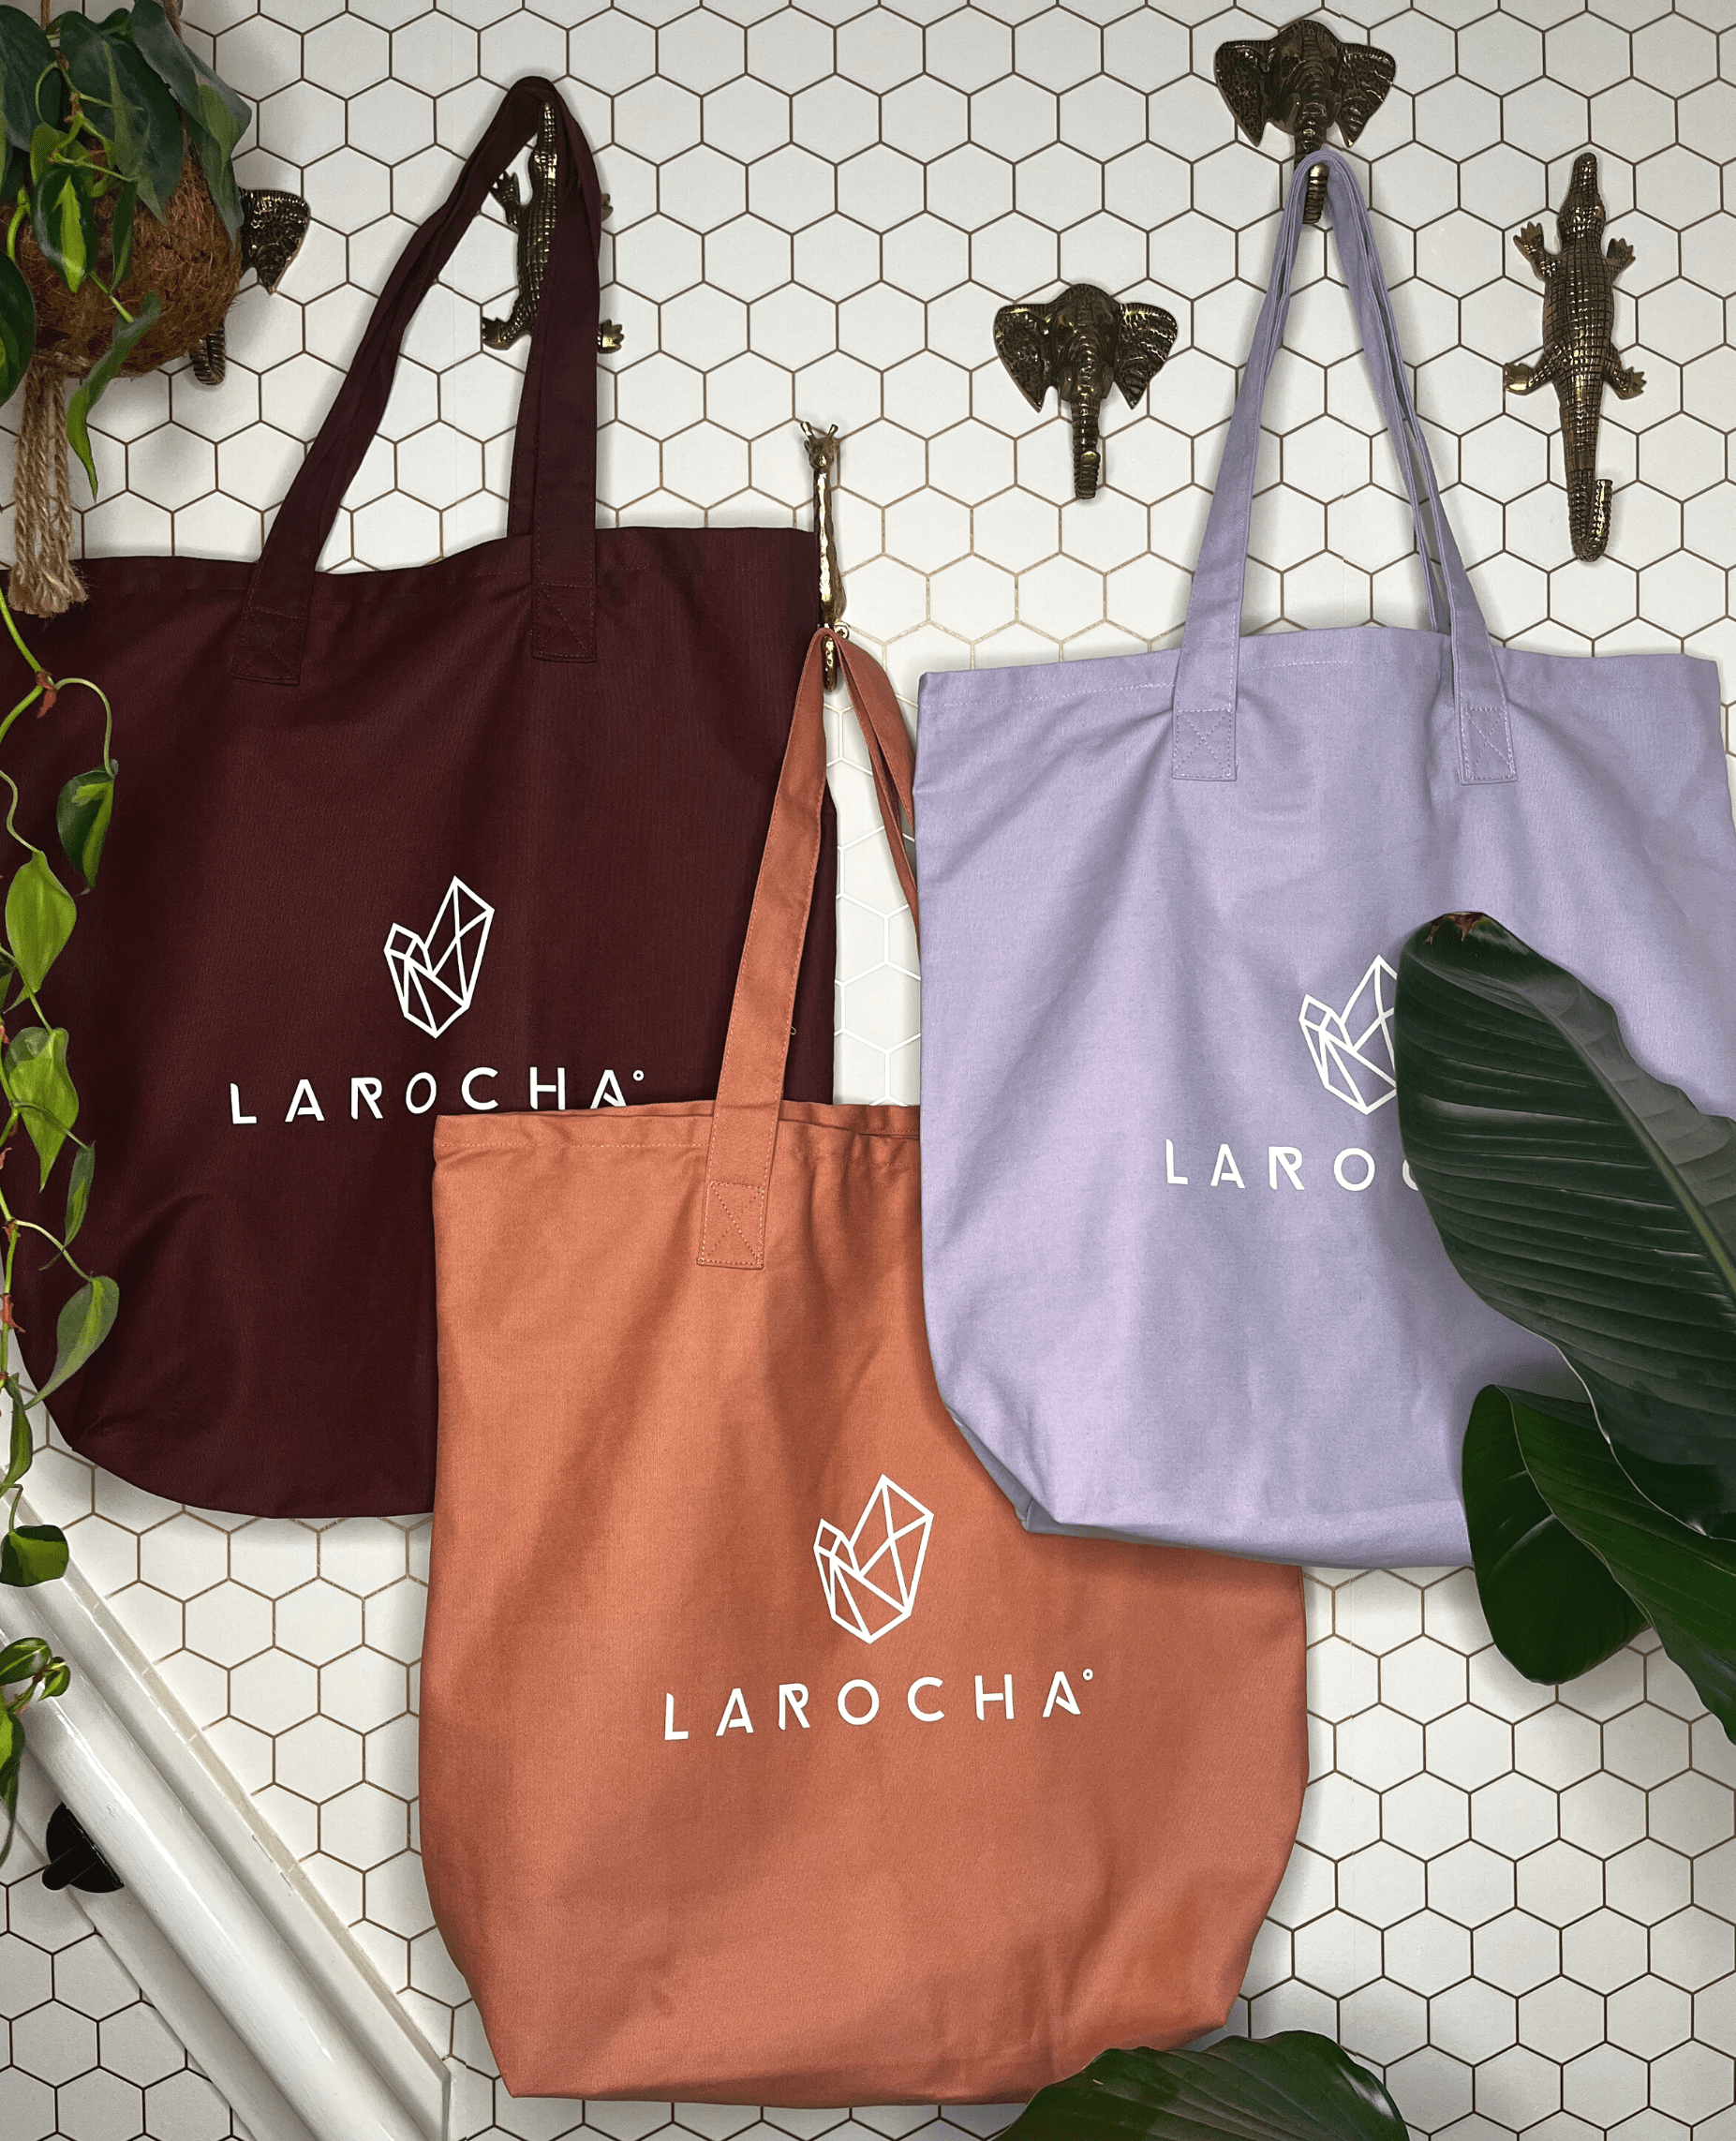 La Rocha katoenen tas, ruime shopper in 3 kleuren